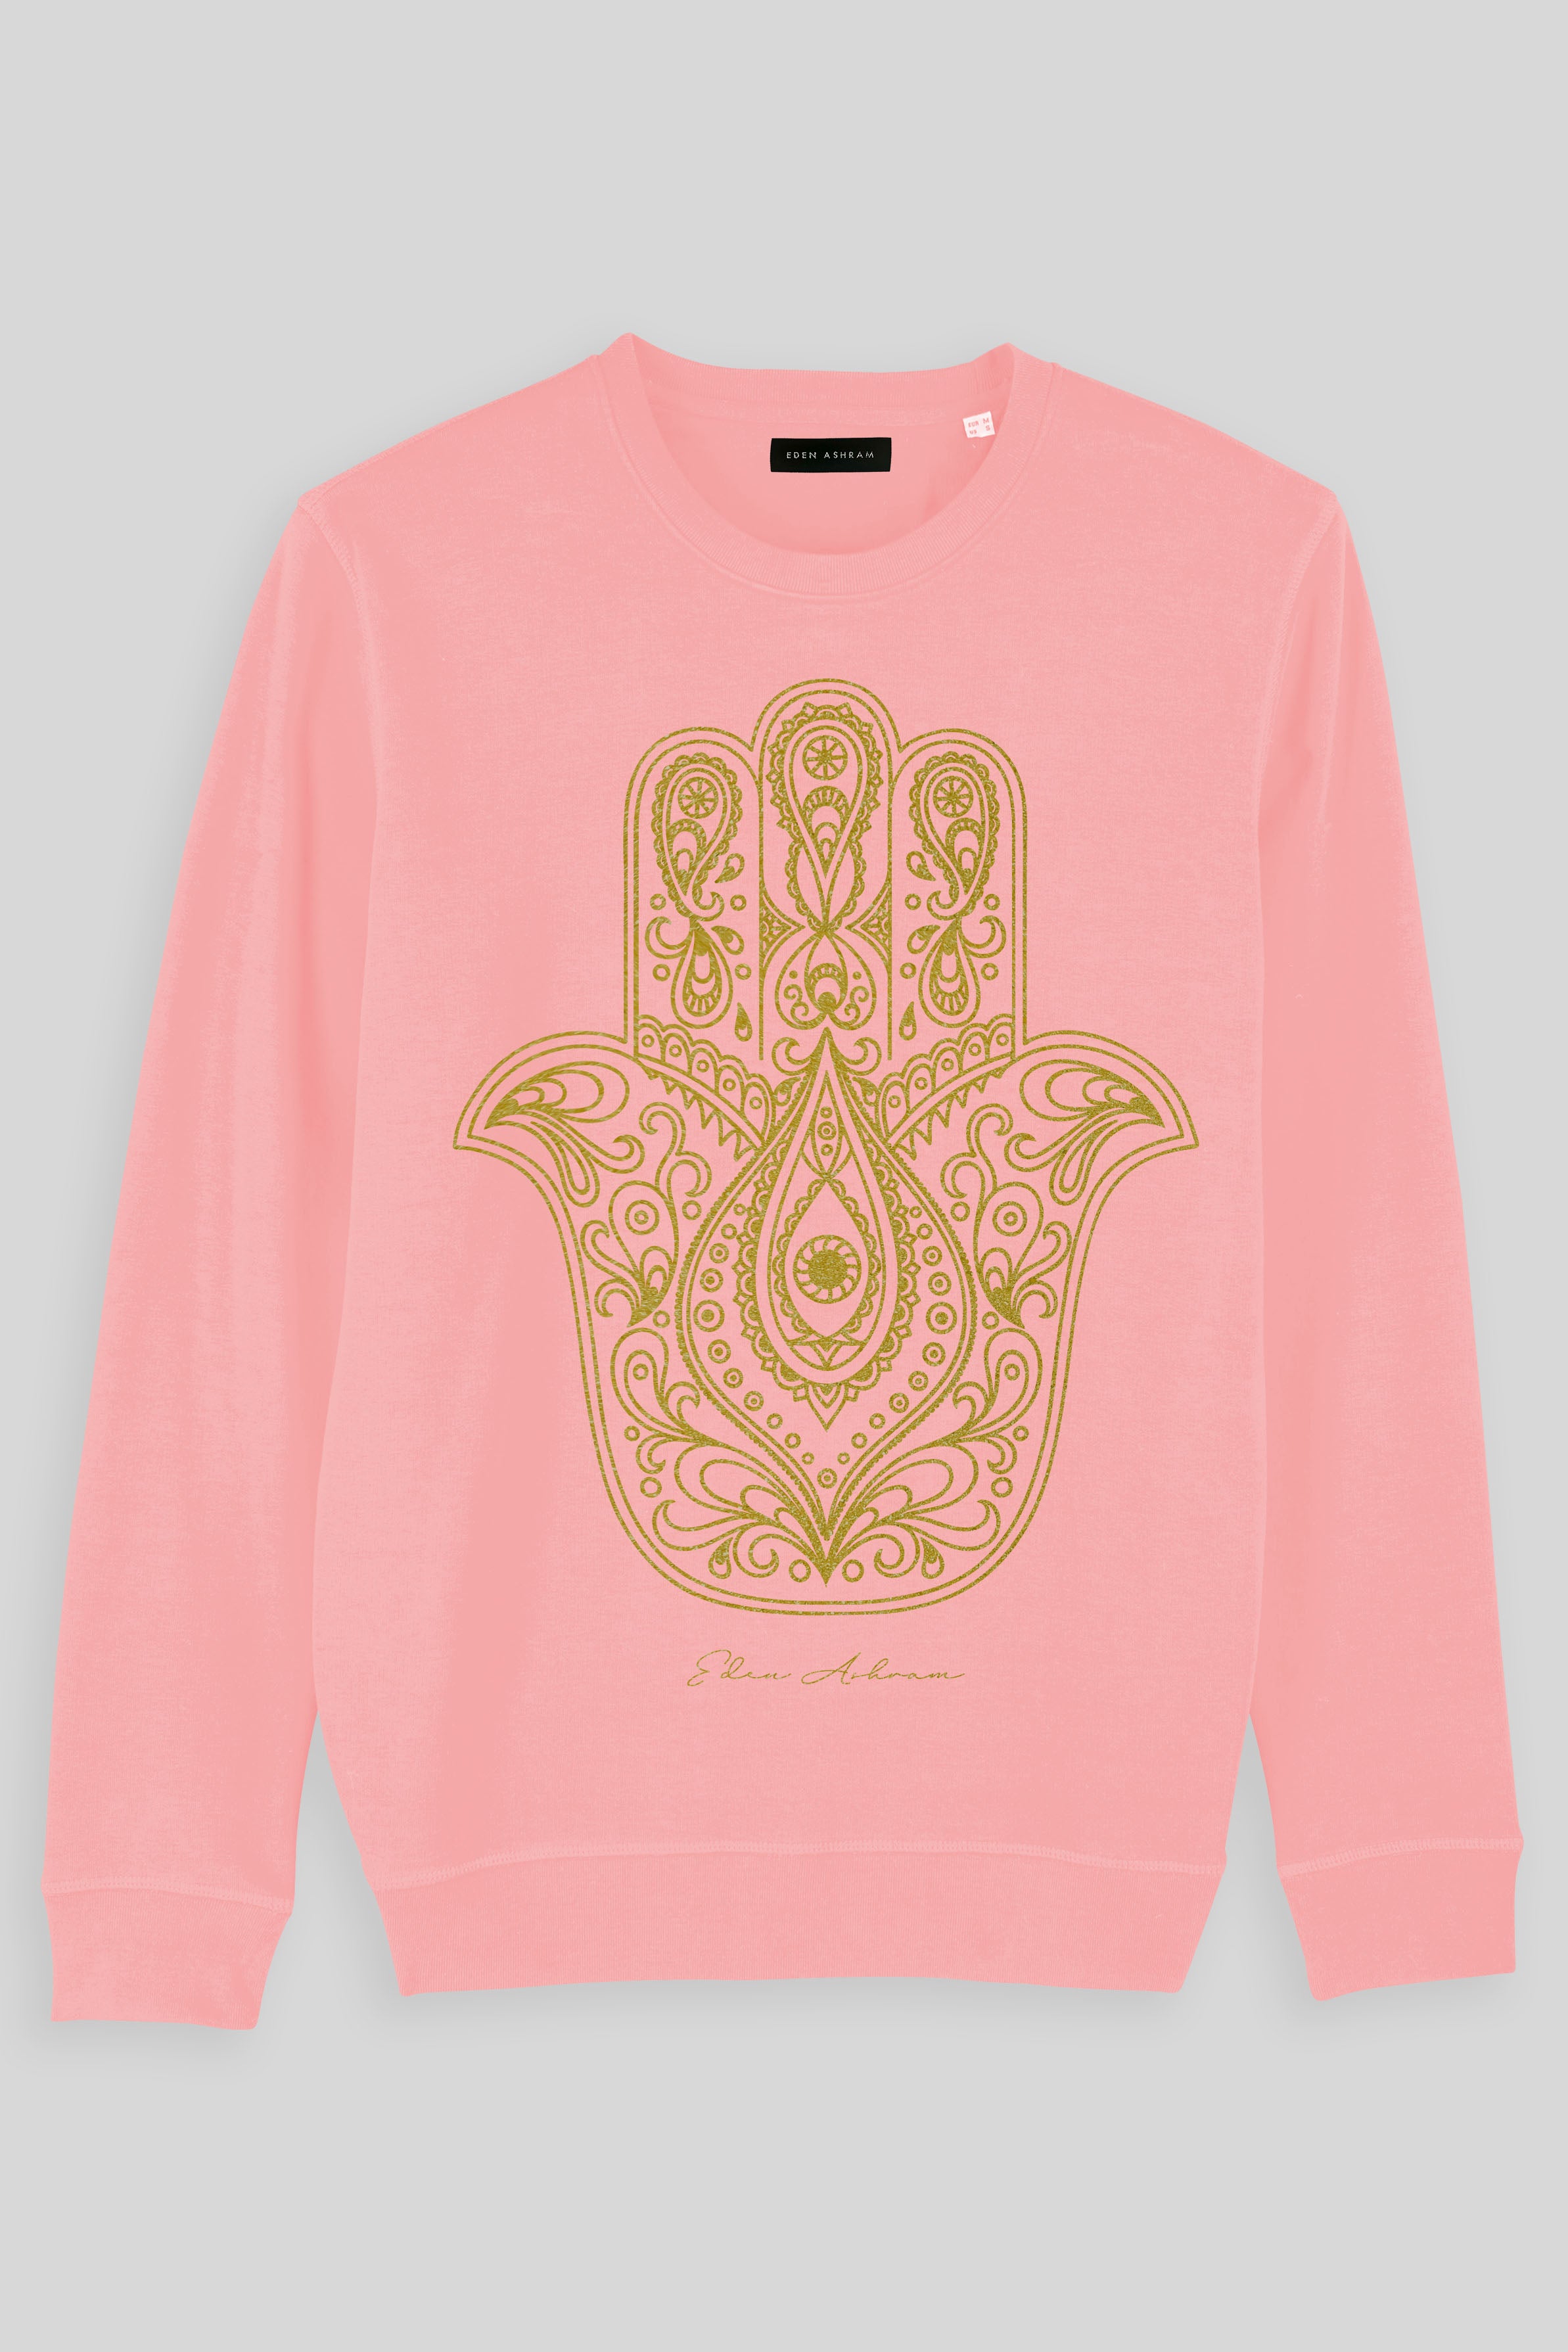 EDEN ASHRAM Gold Hamsa Organic Raglan Sweatshirt Coral Pink